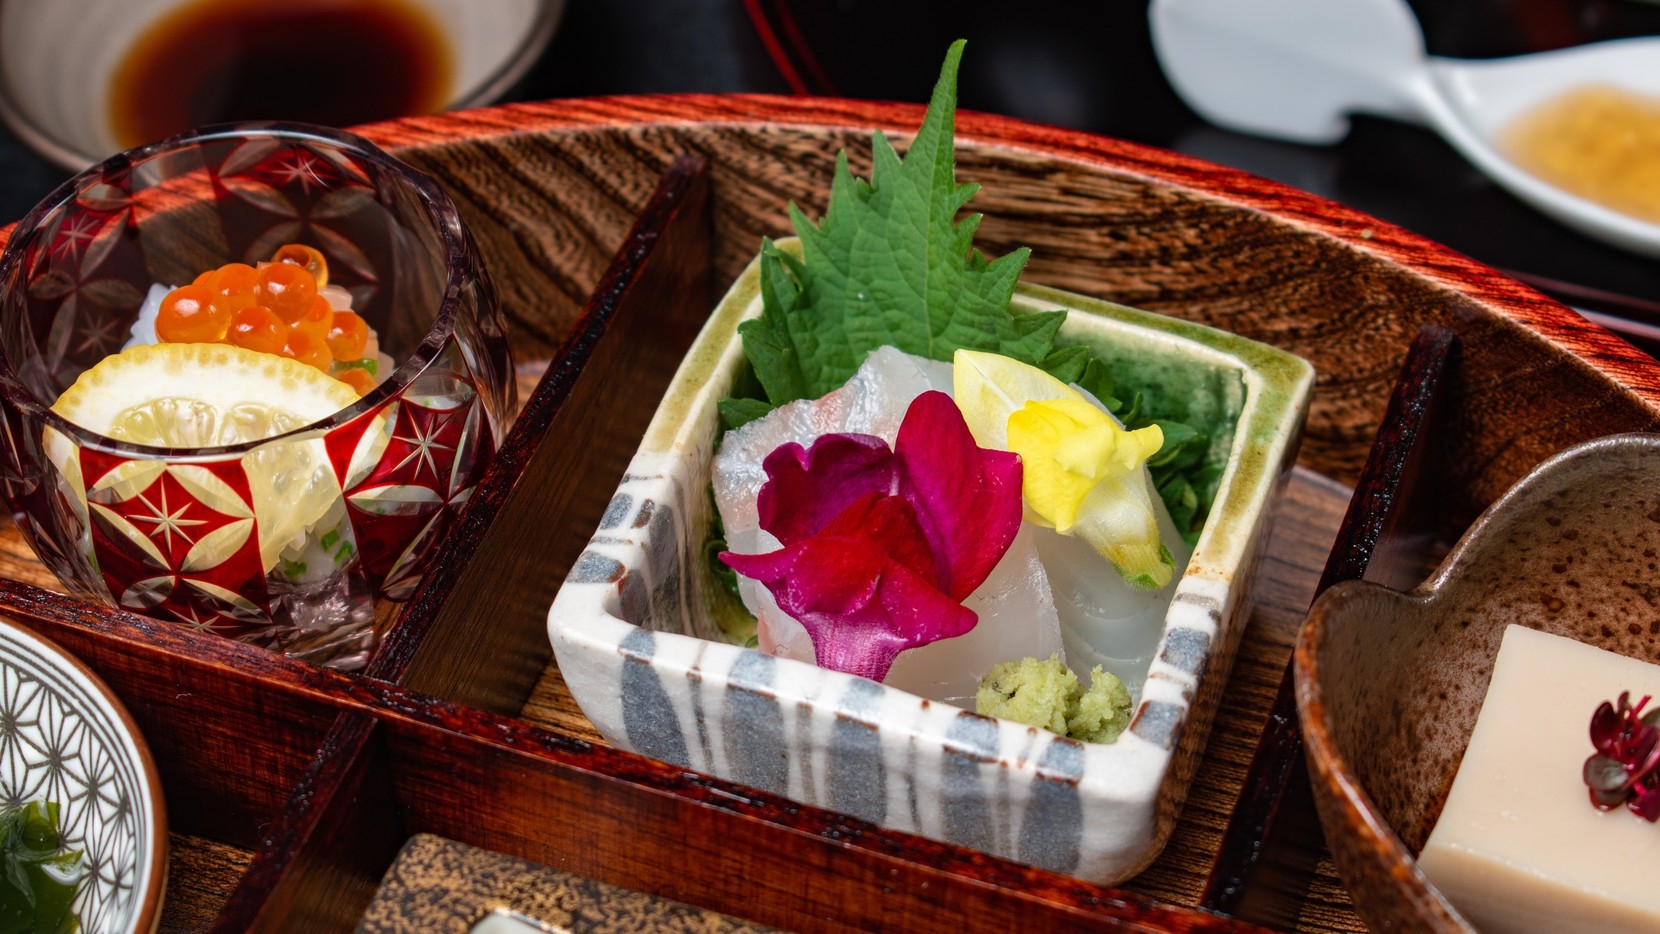 ■京の美食を愉しむ■2食付きプラン